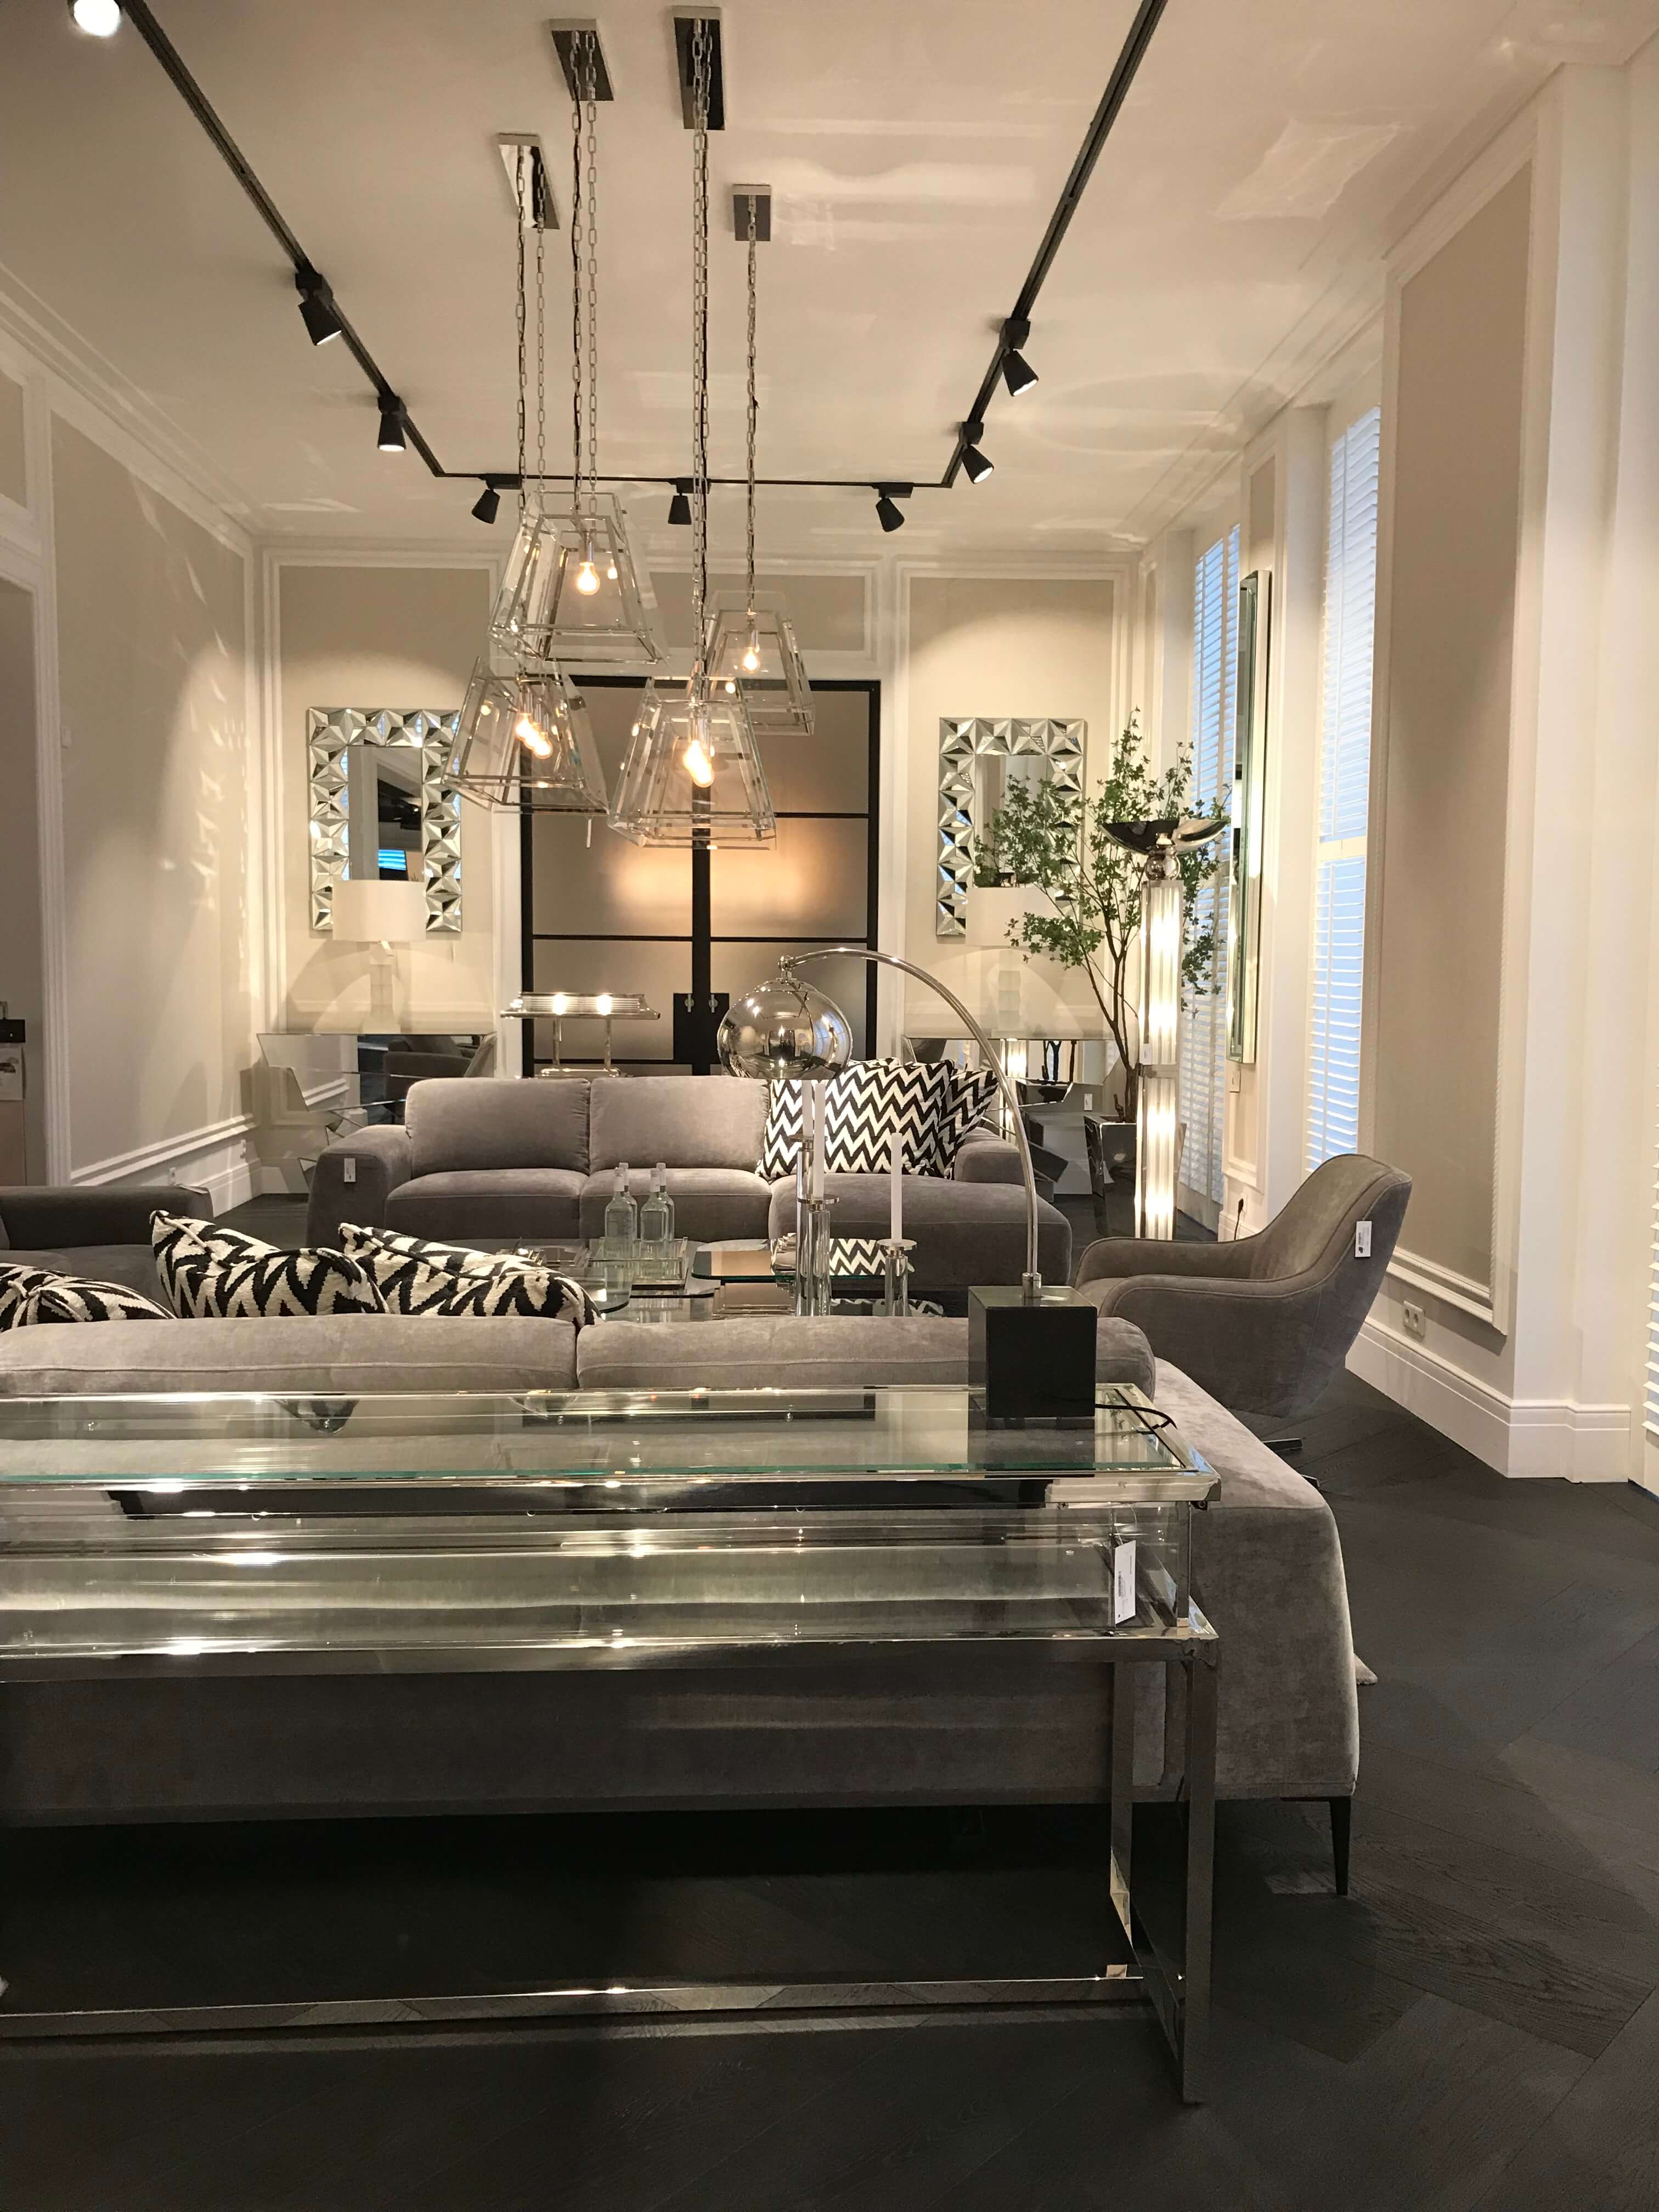 Wohnzimmer mit Luxus Möbeln in gedeckten Grautönen